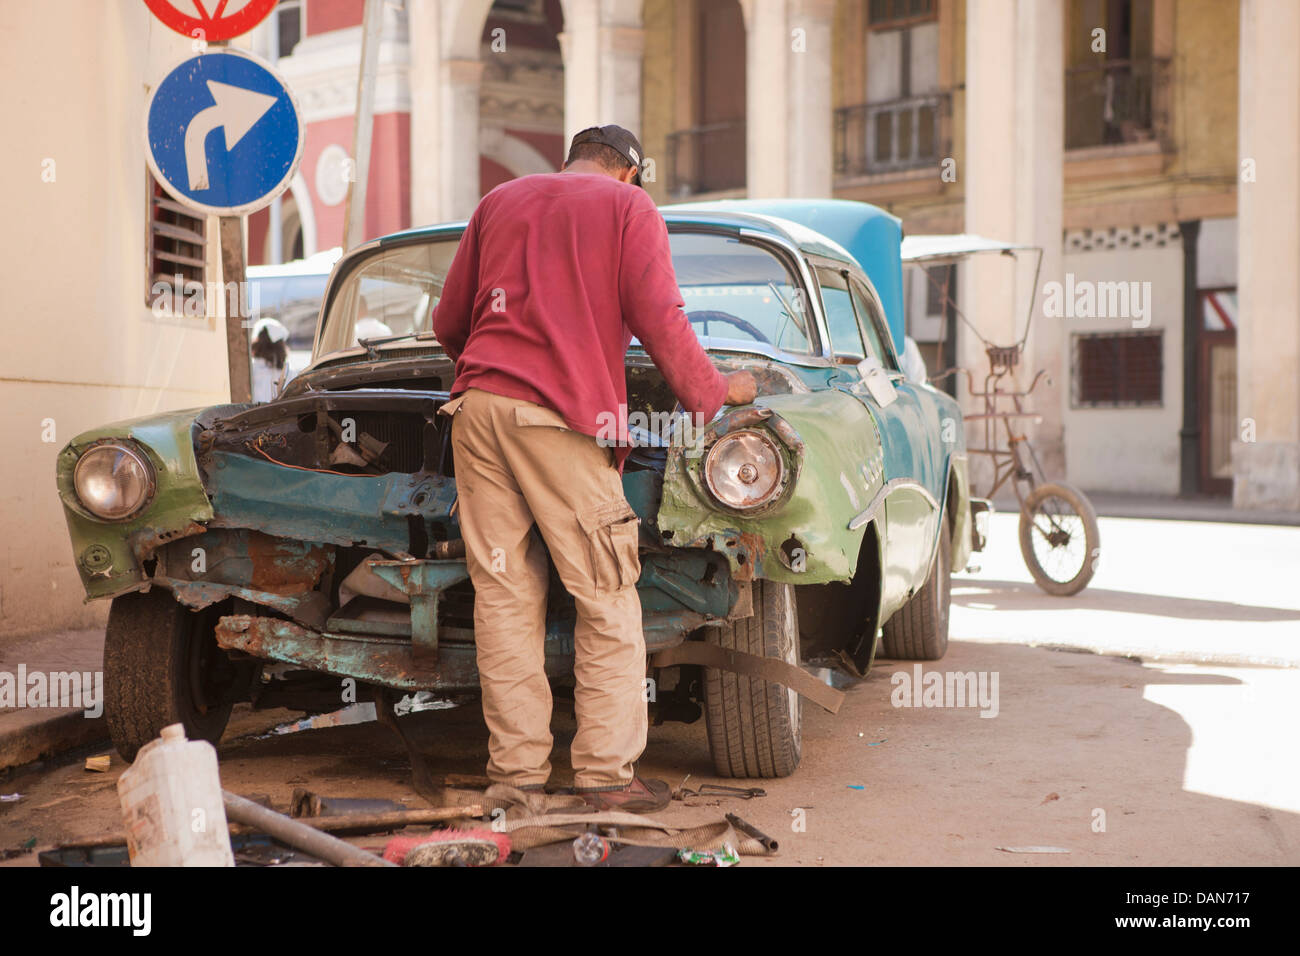 Cuba, La Habana, uomo cercando di riparare un vecchio automobile americana Foto Stock